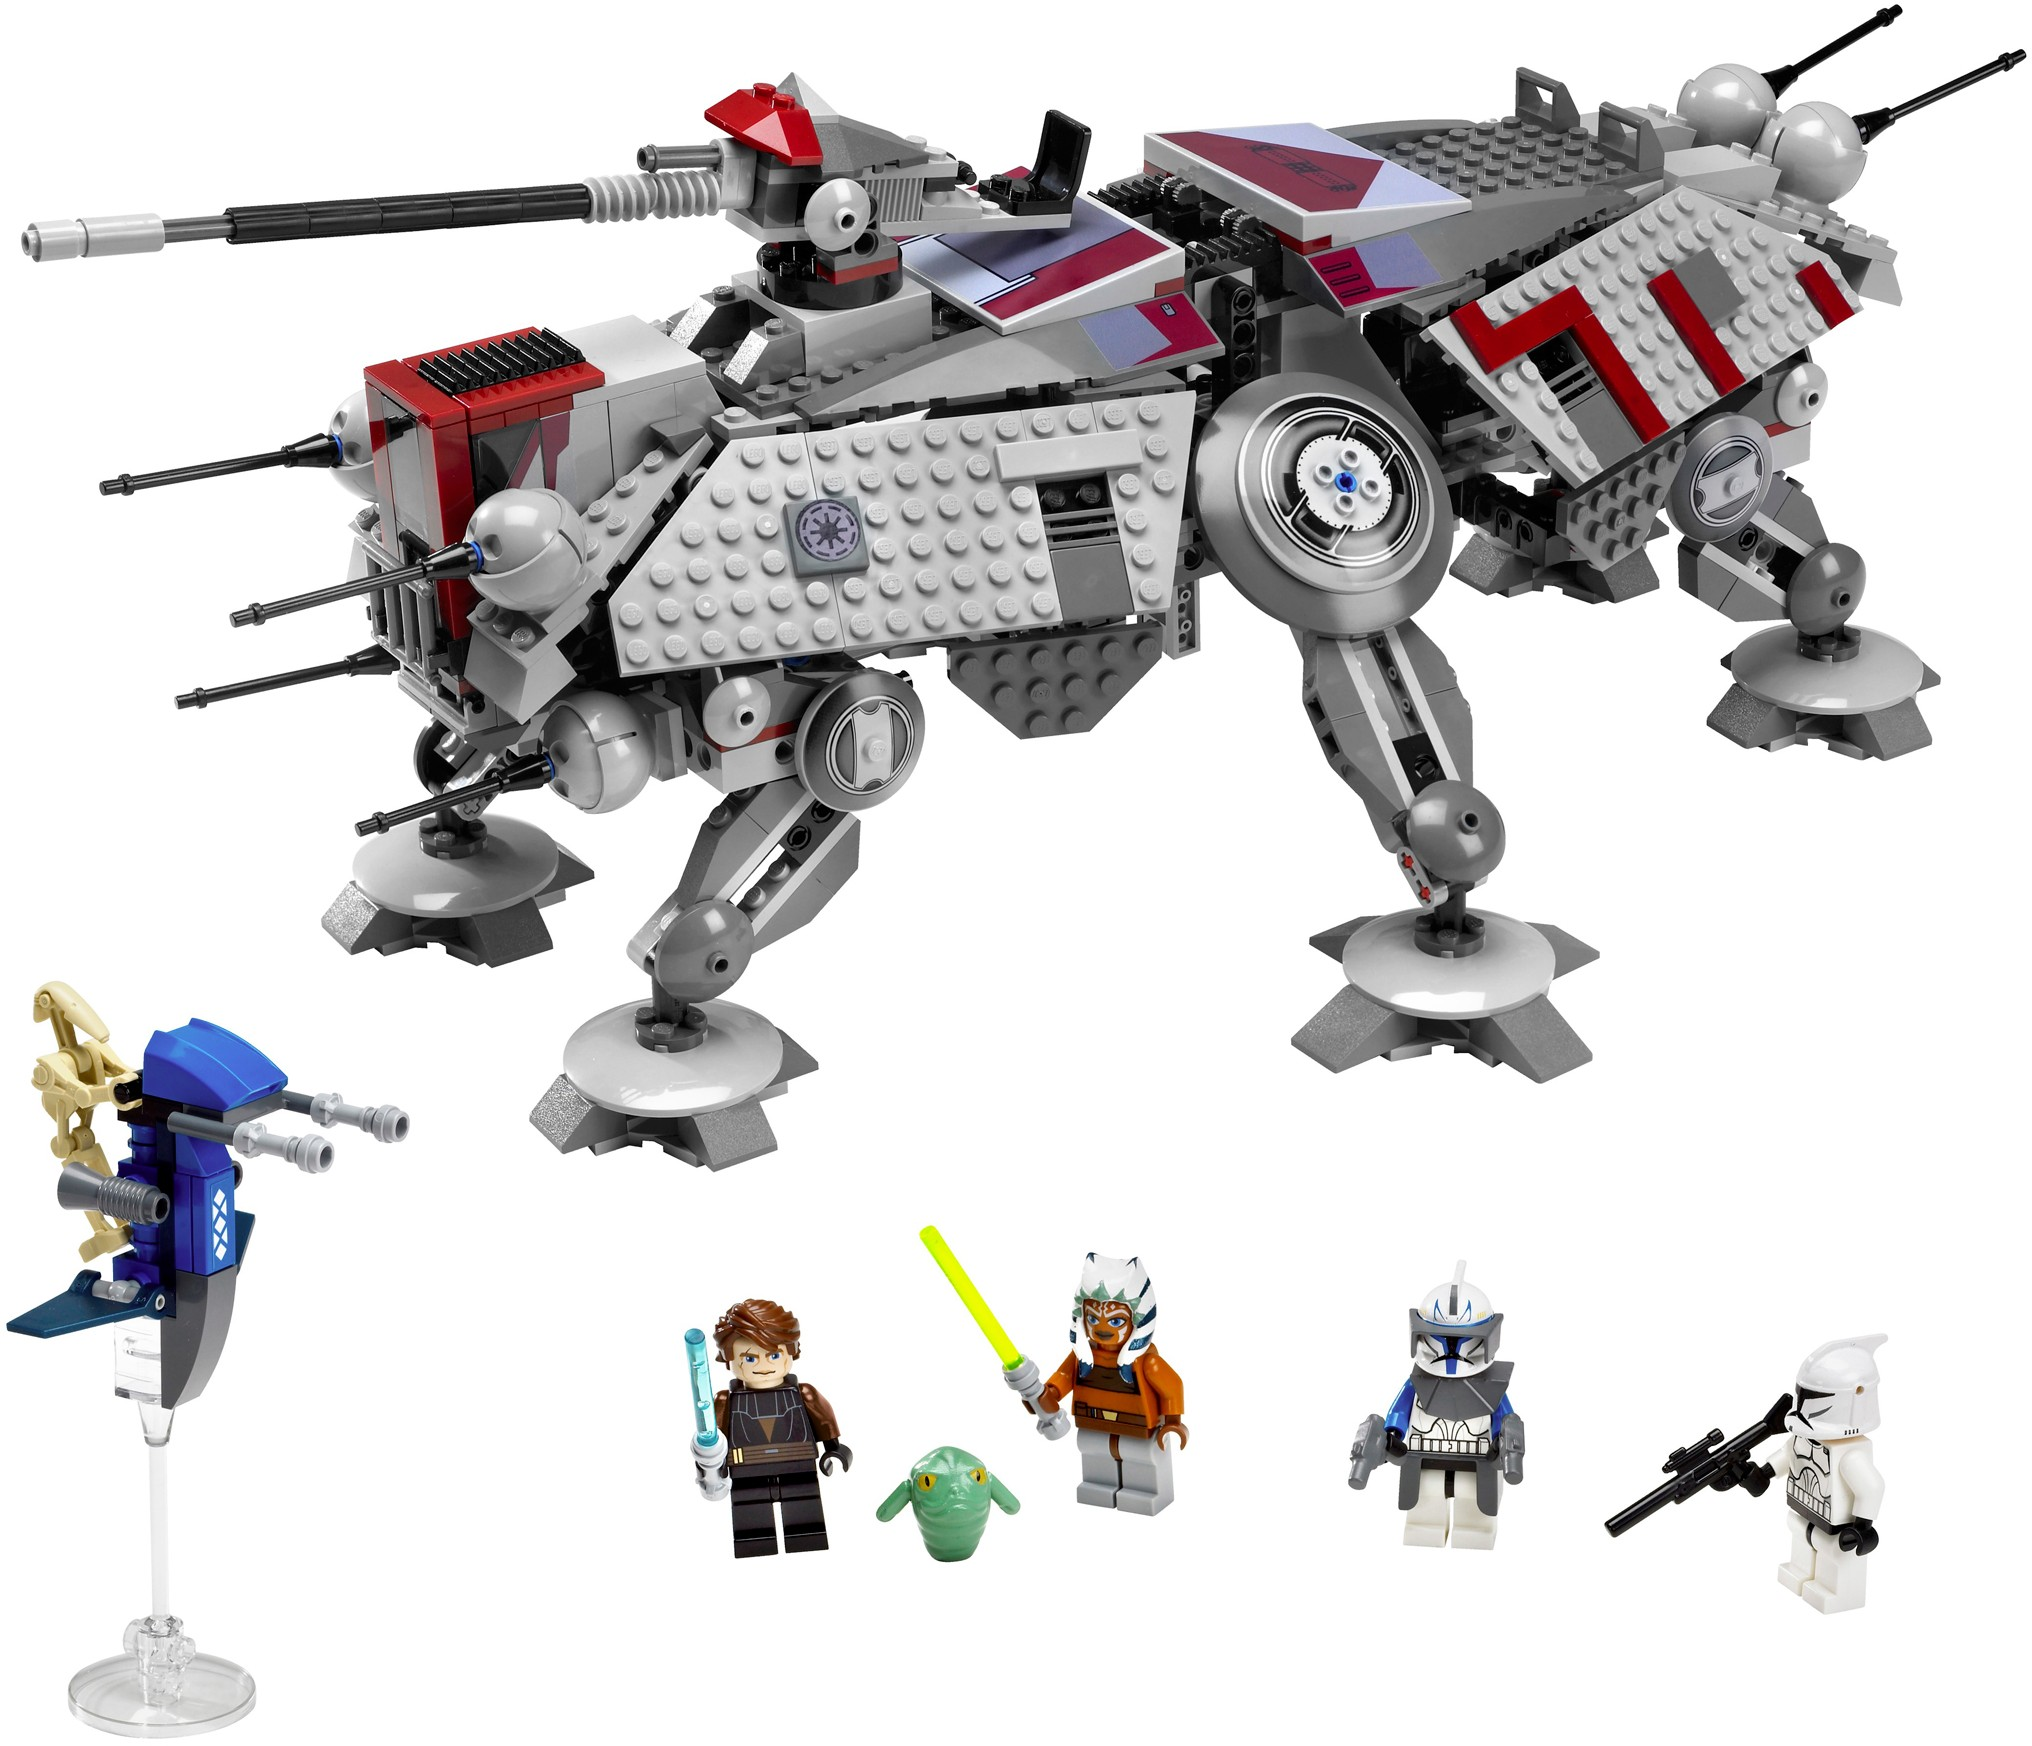 7675: AT-TE Walker | Lego Star Wars & Beyond